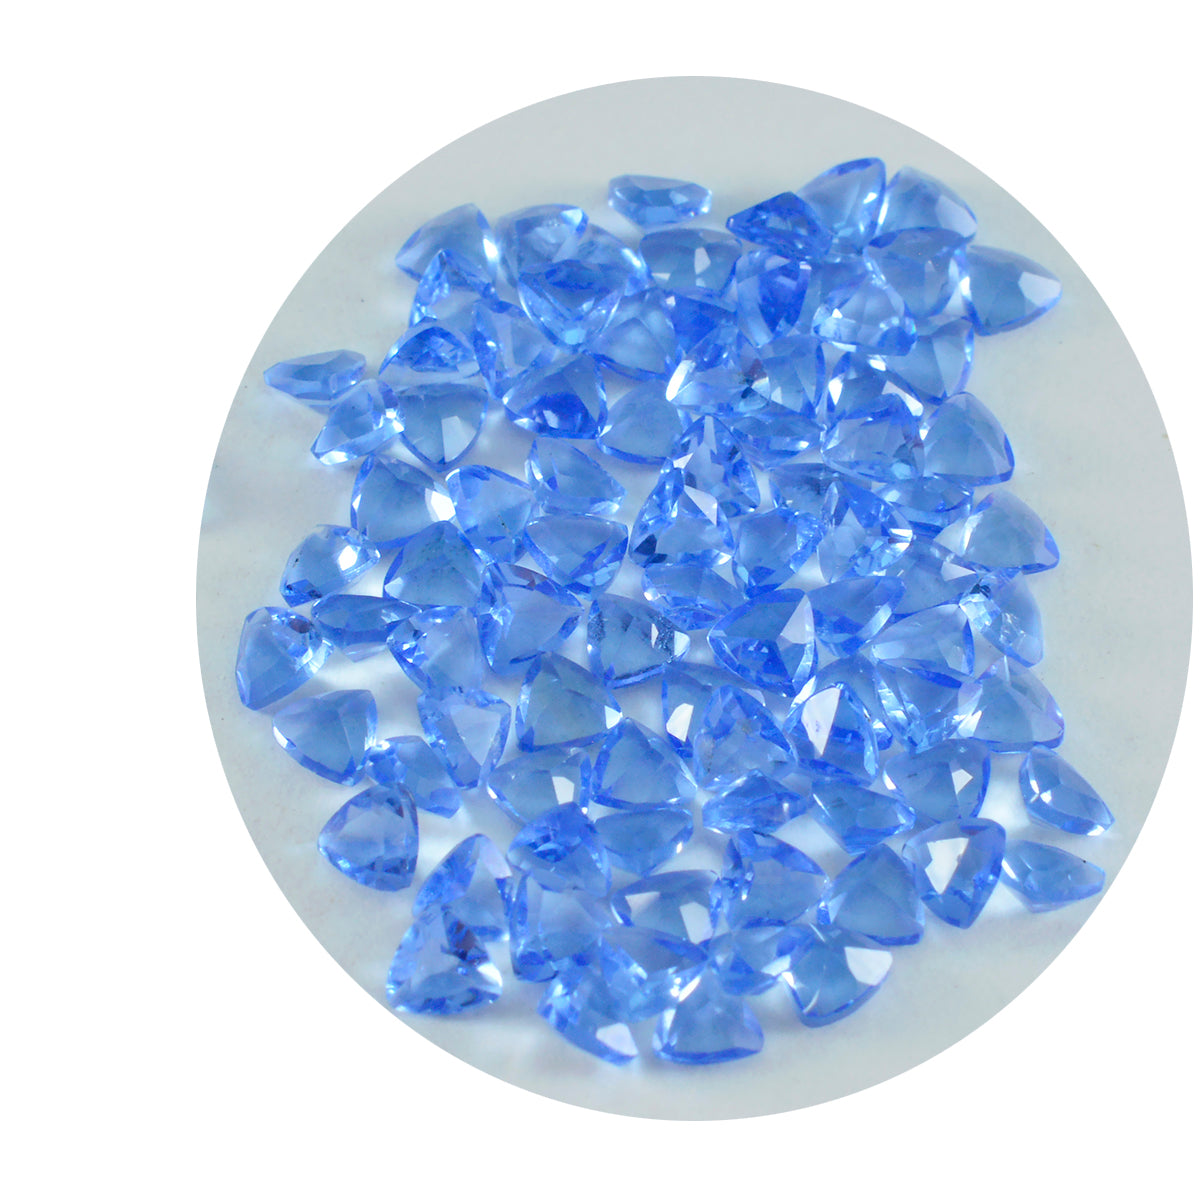 riyogems 1 шт. синий сапфир cz ограненный 4x4 мм форма триллиона красивый качественный драгоценный камень